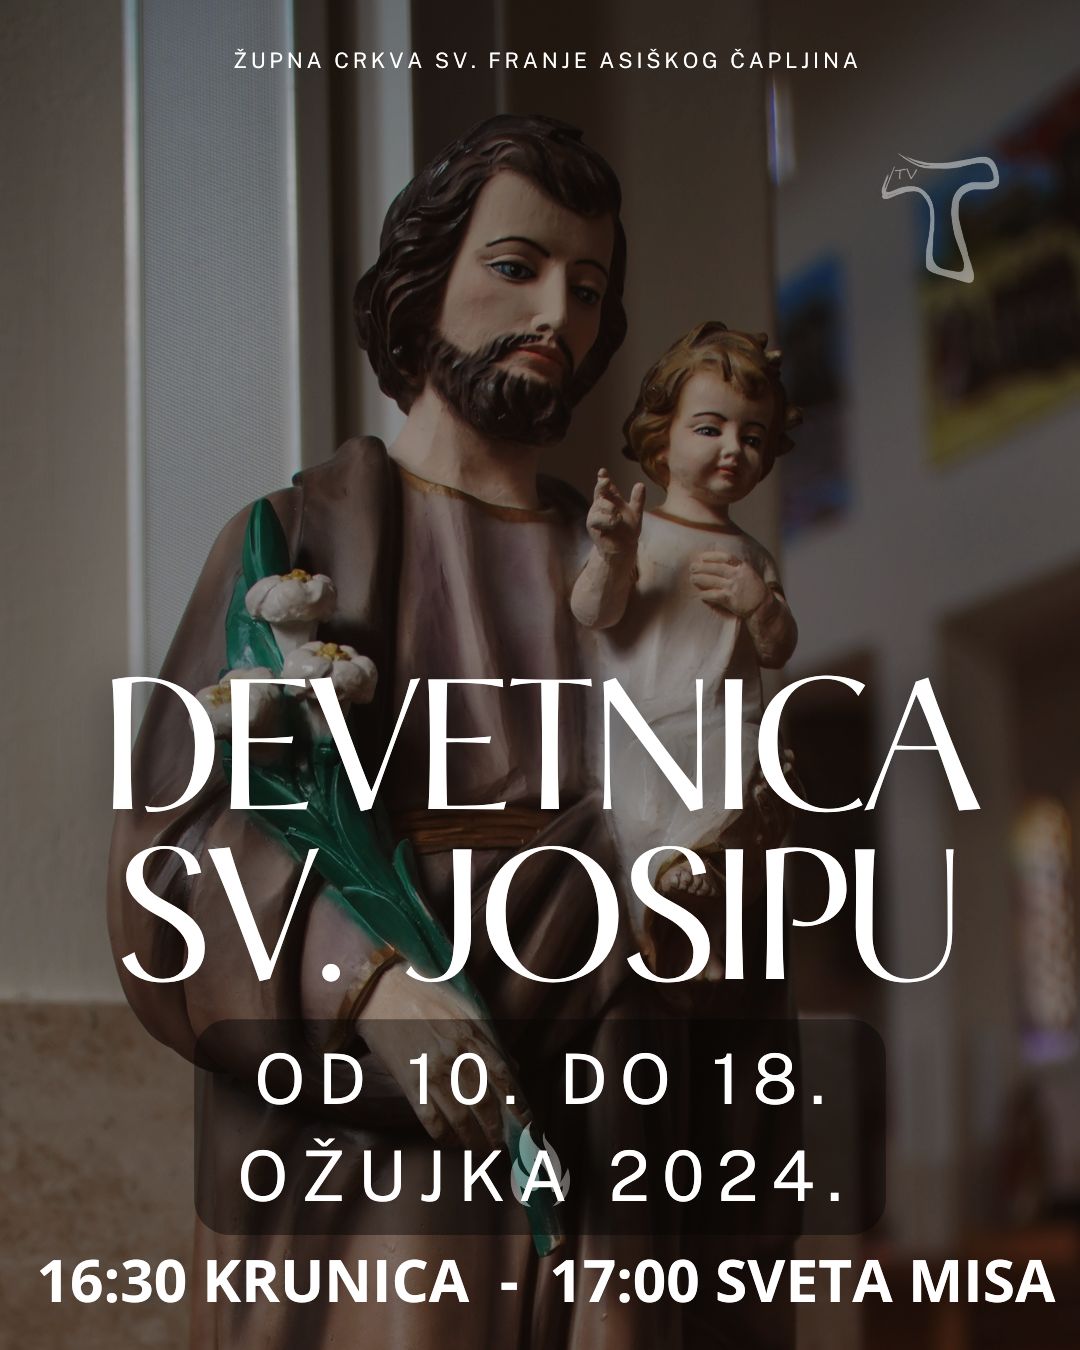 U mjesecu svetog Josipa služit će se devetnica zaštitniku crkve i domovine Hrvatske u crkvi svetog Franje Asiškog u Čapljini